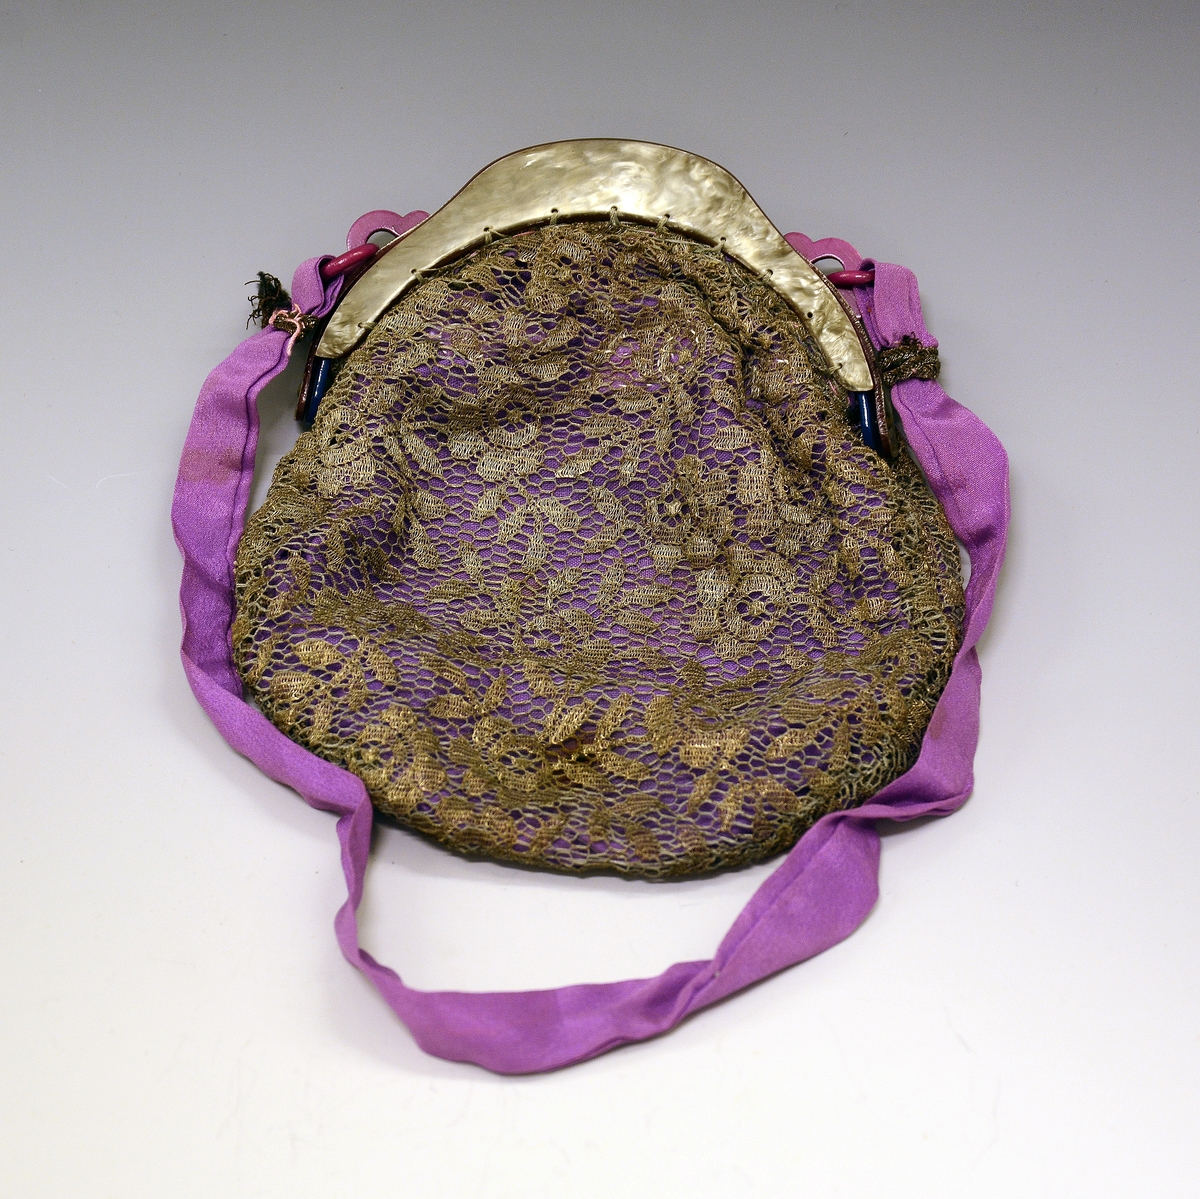 Selskapsveske av fiolett silke med brokade. Låsramme av skilpadde med feste for bærebånd av fiolett silke.